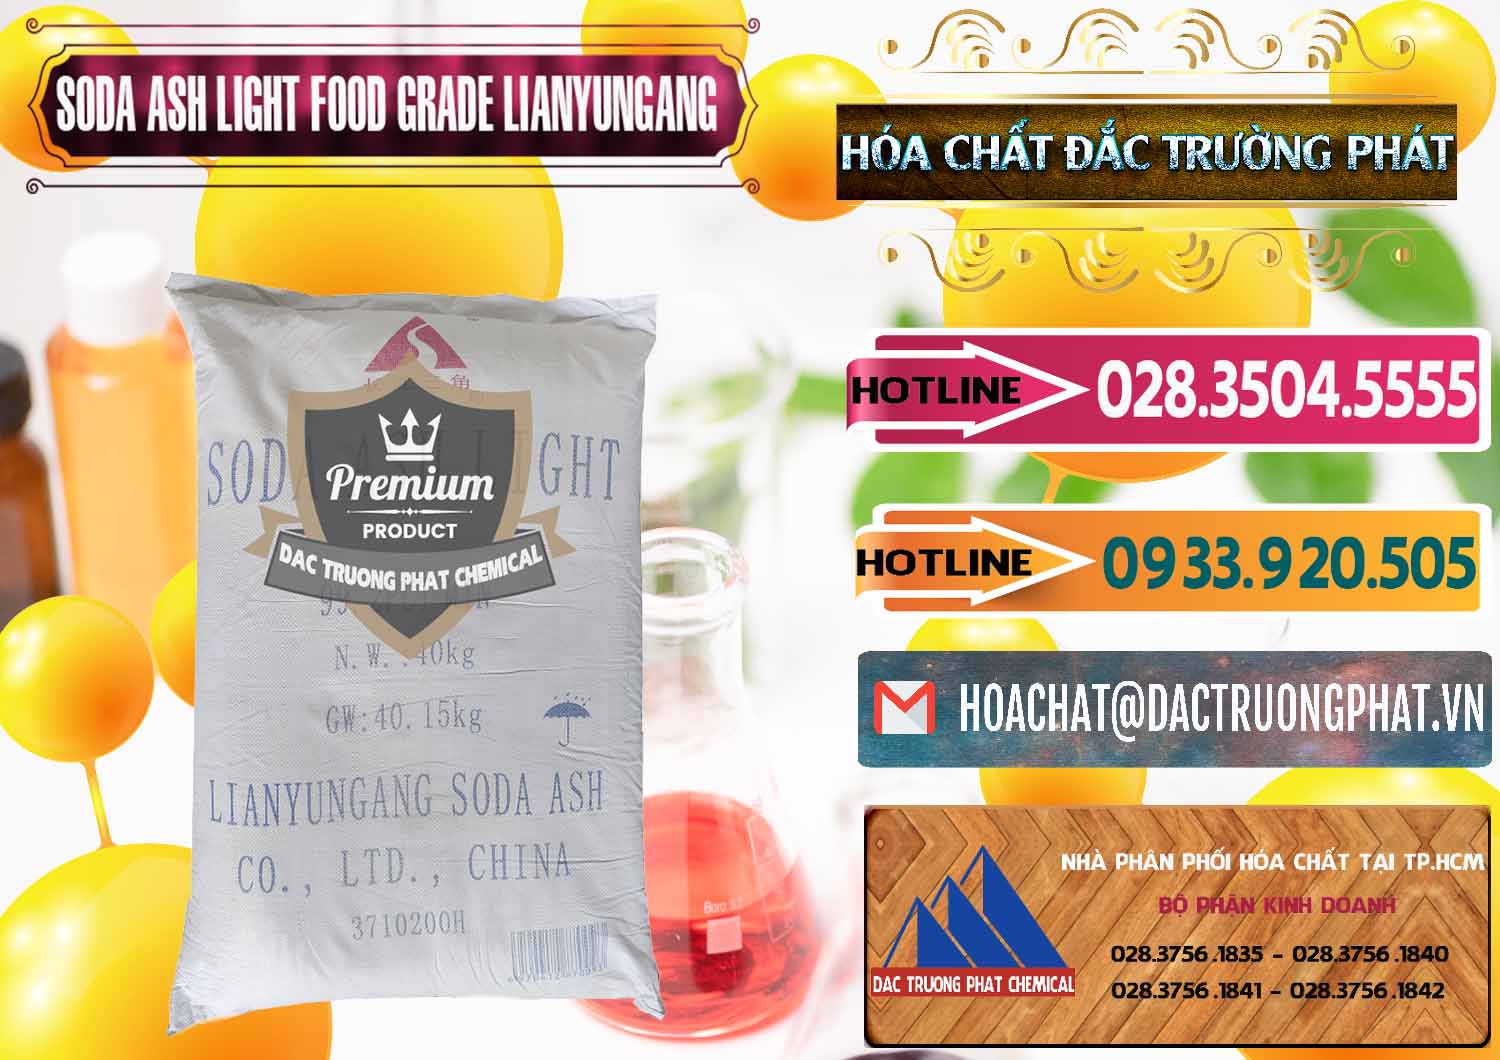 Công ty bán - cung cấp Soda Ash Light - NA2CO3 Food Grade Lianyungang Trung Quốc - 0222 - Cty chuyên bán - phân phối hóa chất tại TP.HCM - dactruongphat.vn